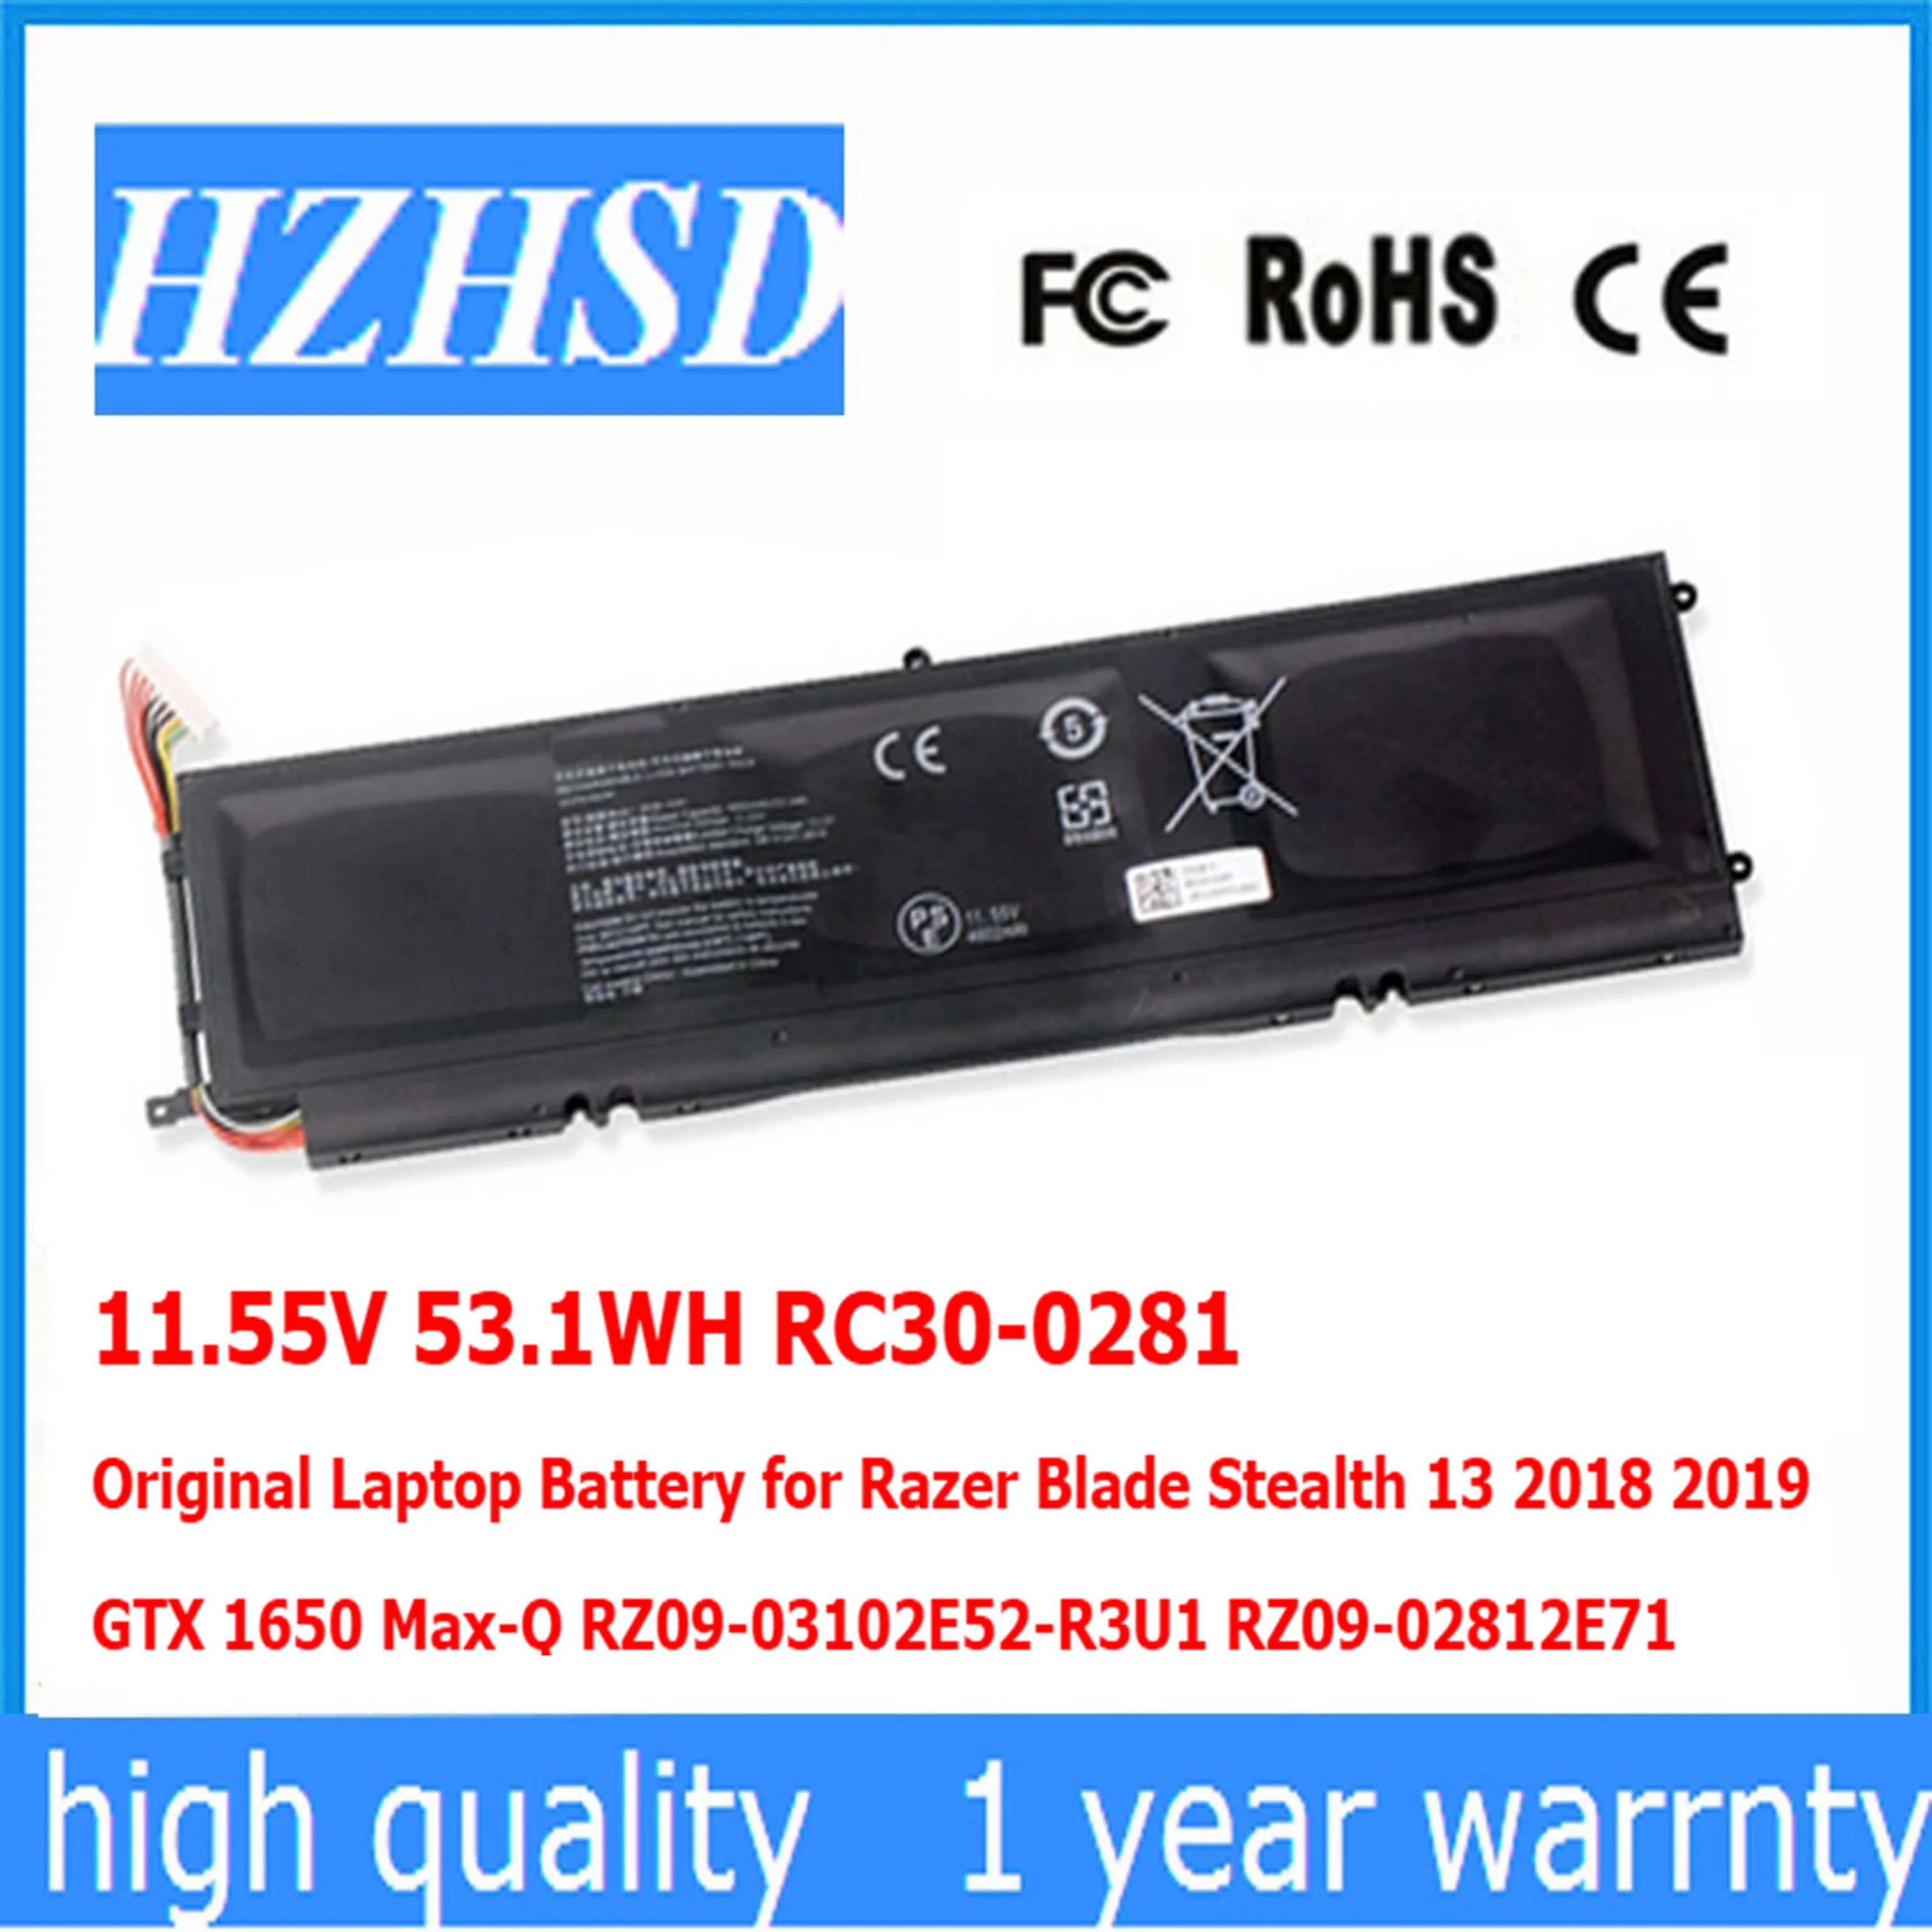 

11.55V 53.1WH RC30-0281 Original Laptop Battery for Razer Blade Stealth 13 2018 2019 GTX 1650 Max-Q RZ09-03102E52-R3U1 RZ09-0281